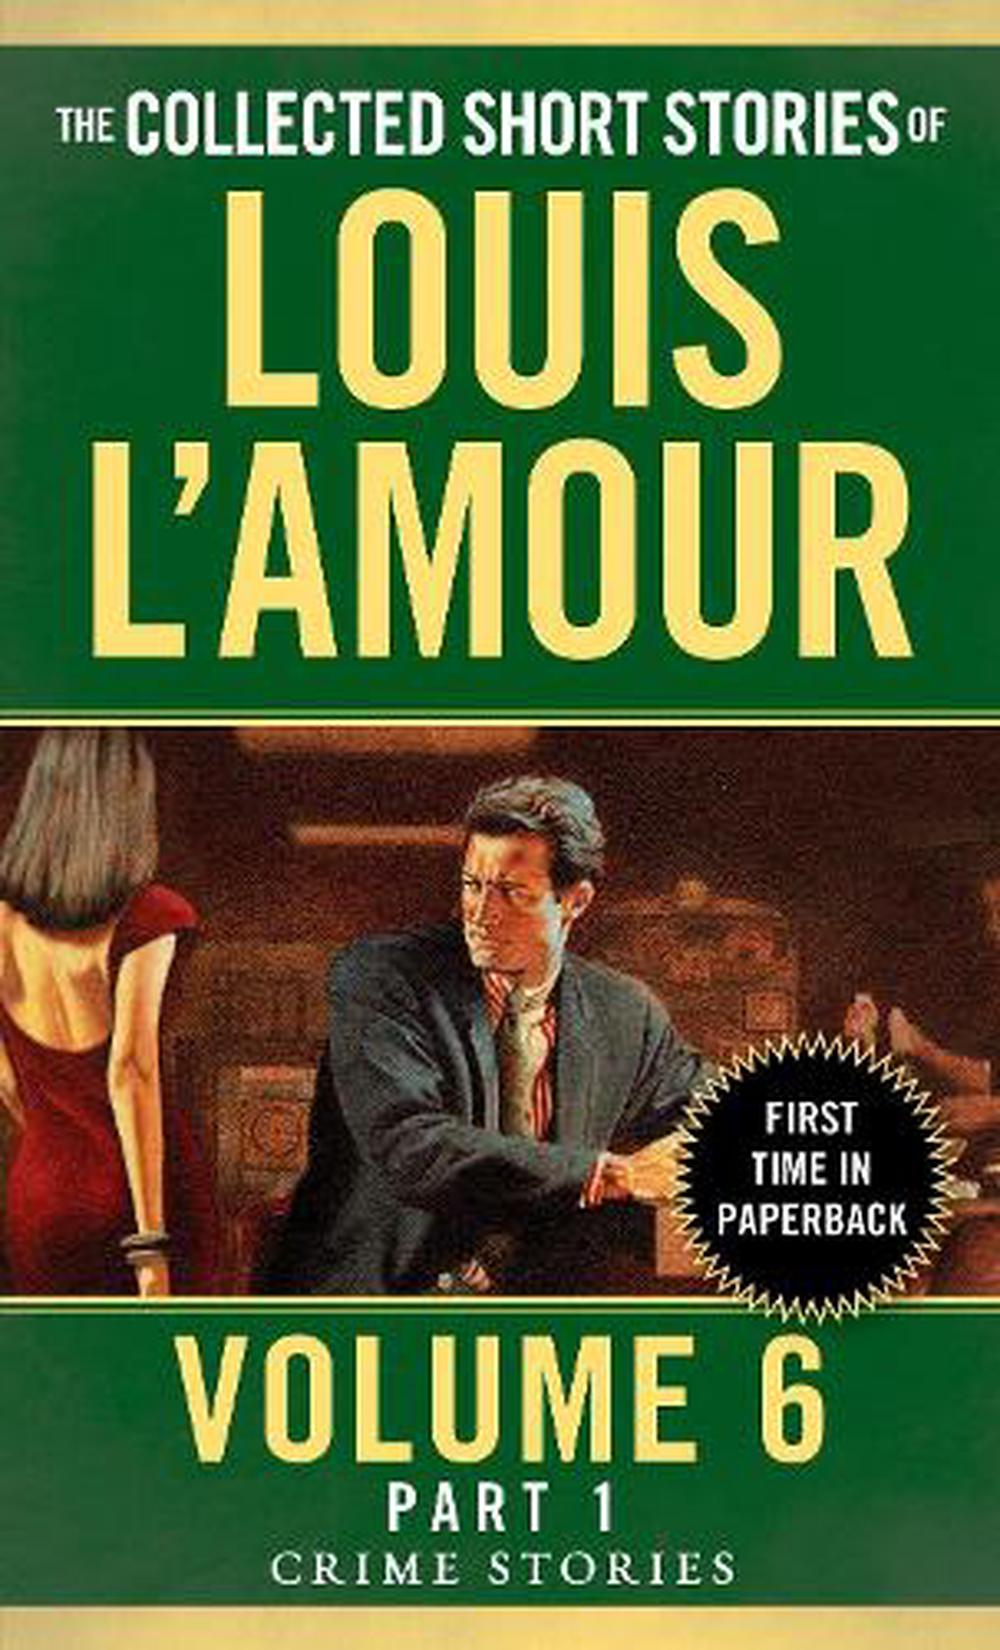 Flint - Louis L'Amour - Google Books